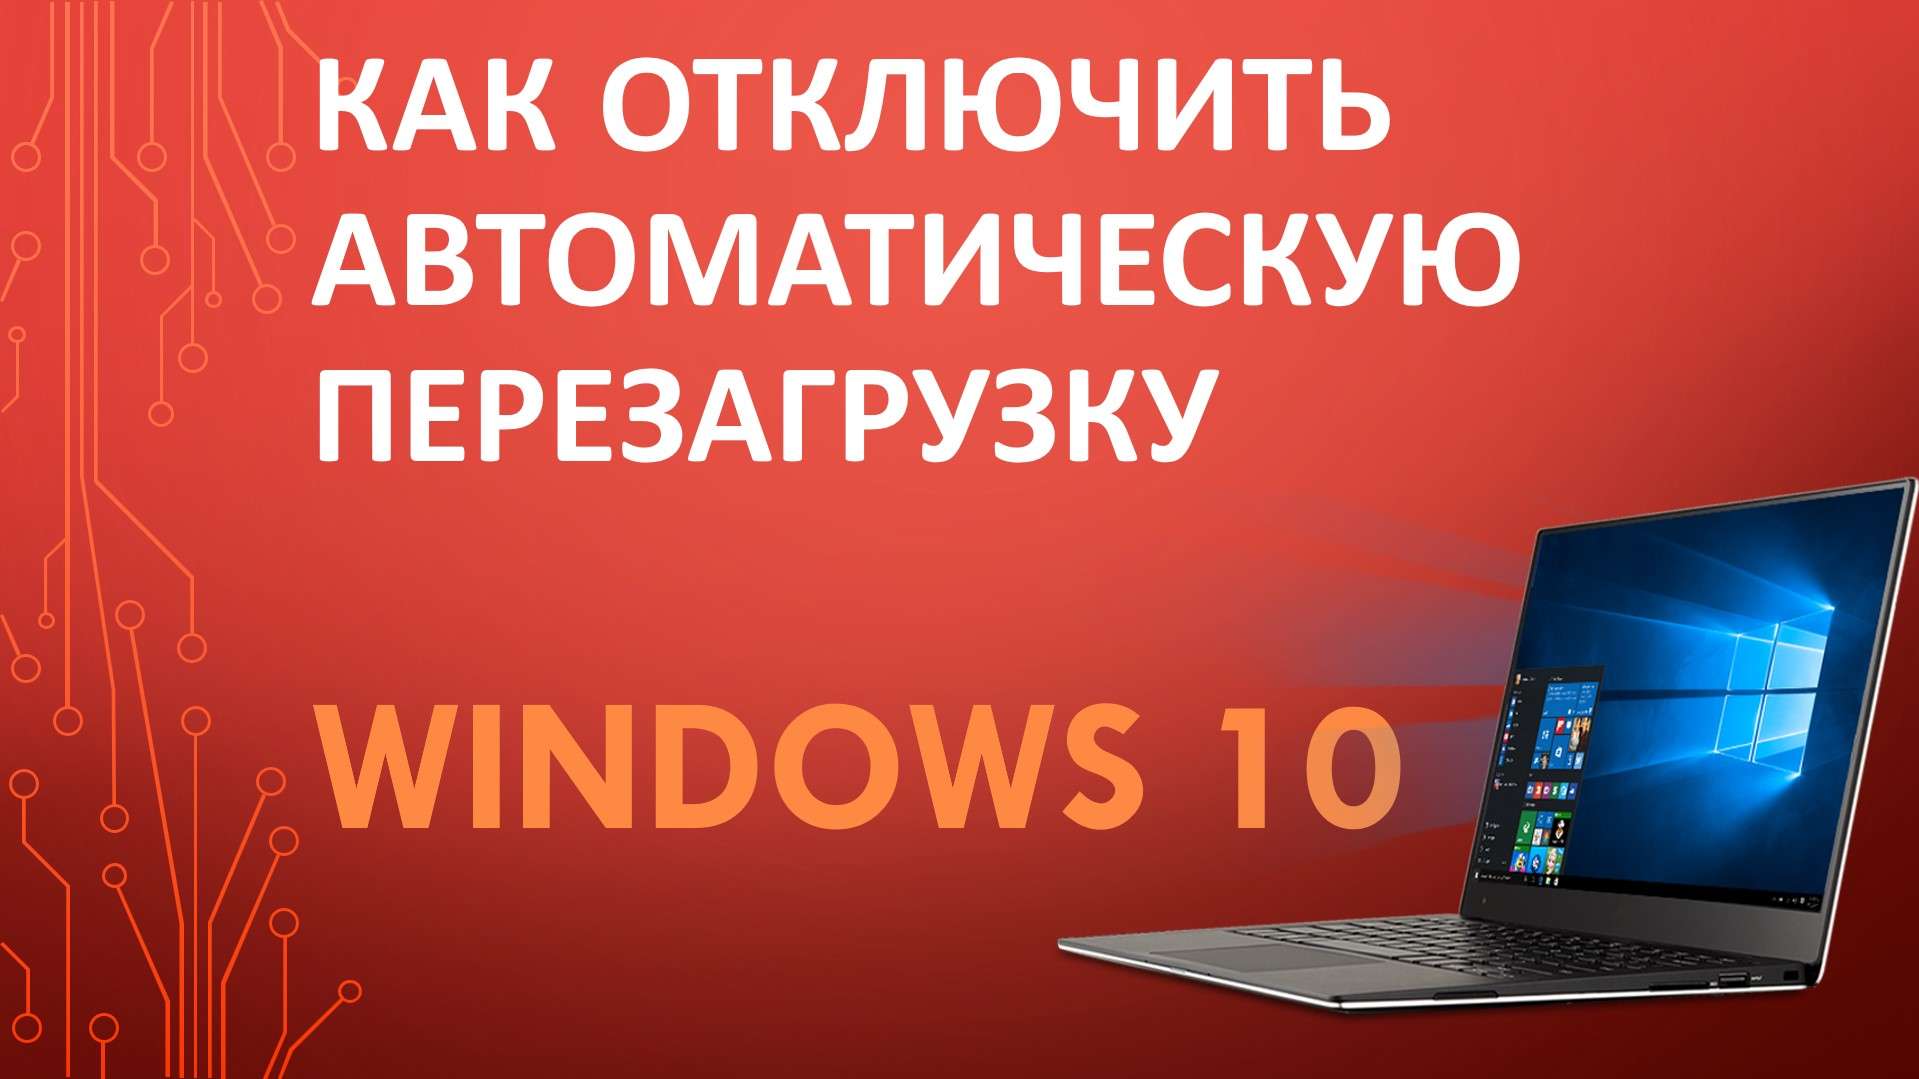 Как отключить автоматическую перезагрузку Windows 10?